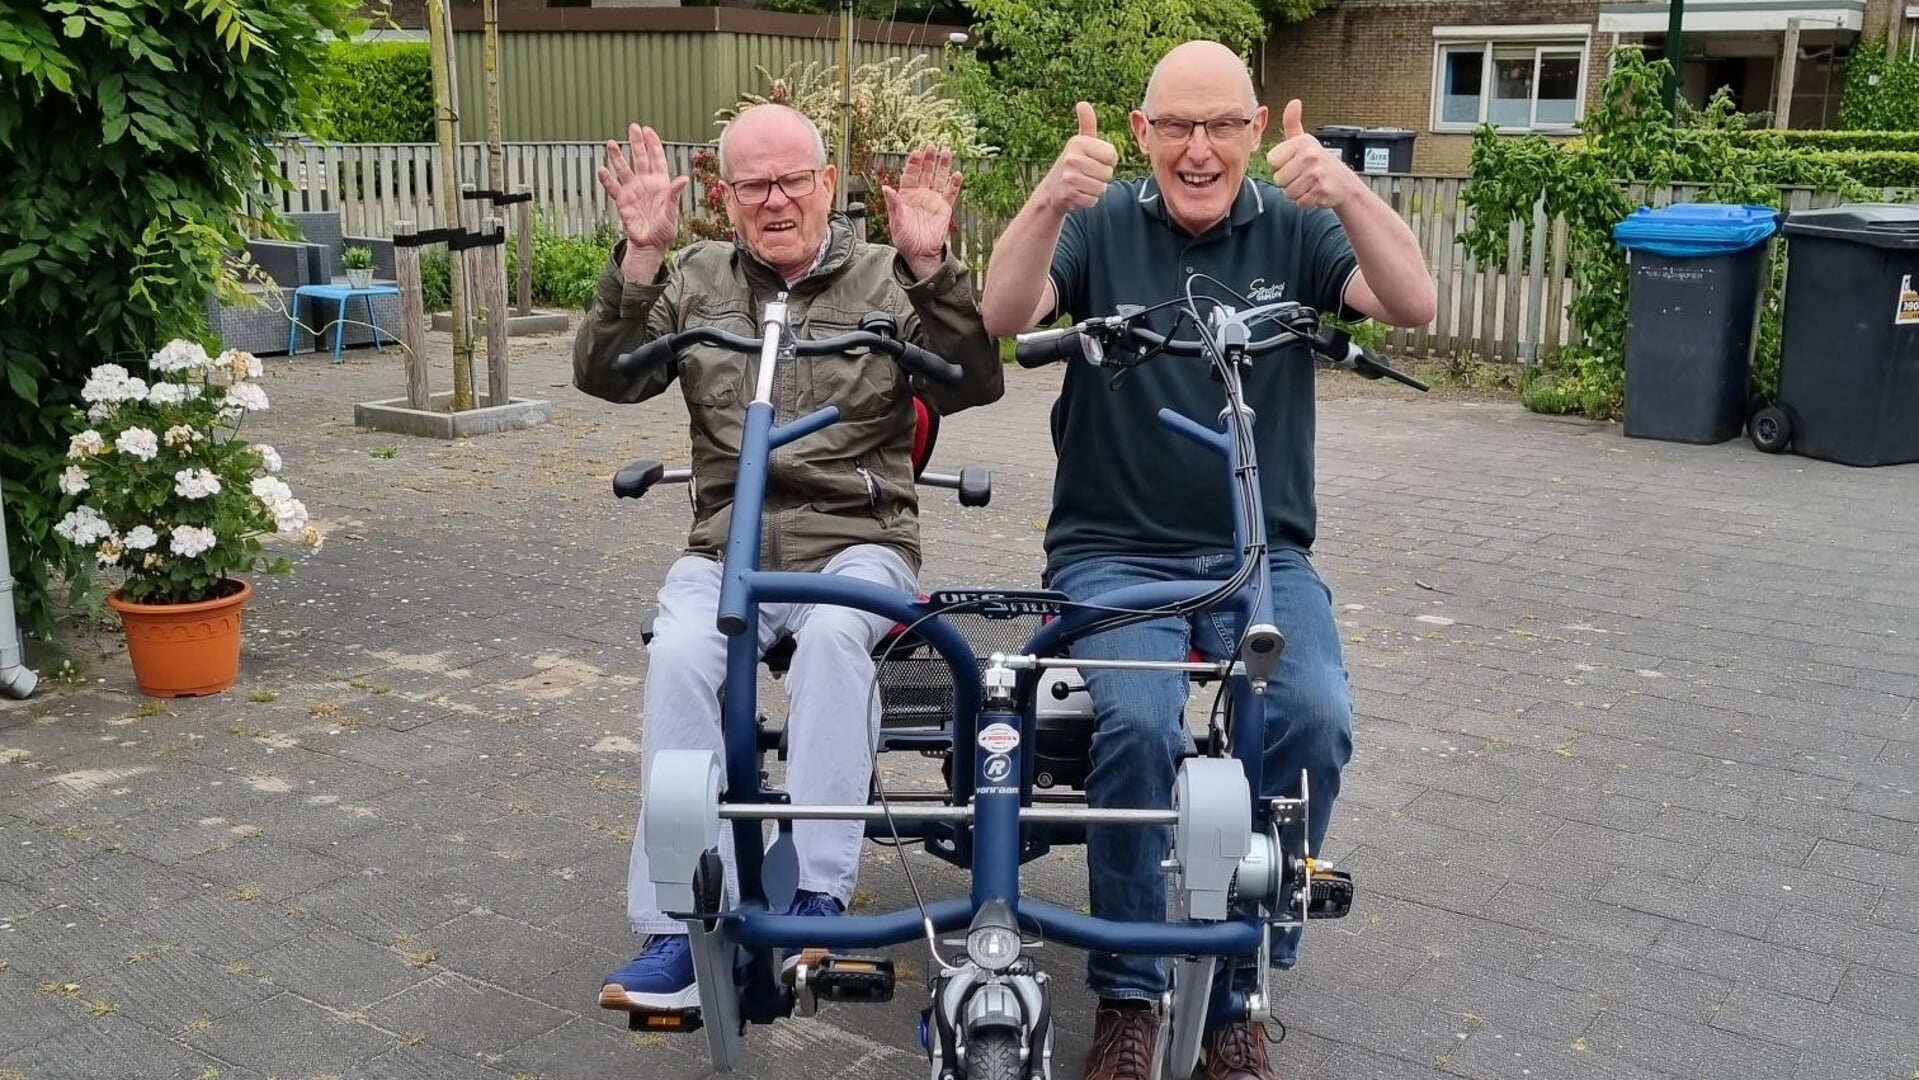 Bewoners Hans (84) en Karel (60) van ‘s Heeren Loo blij met nieuwe duo-fiets.